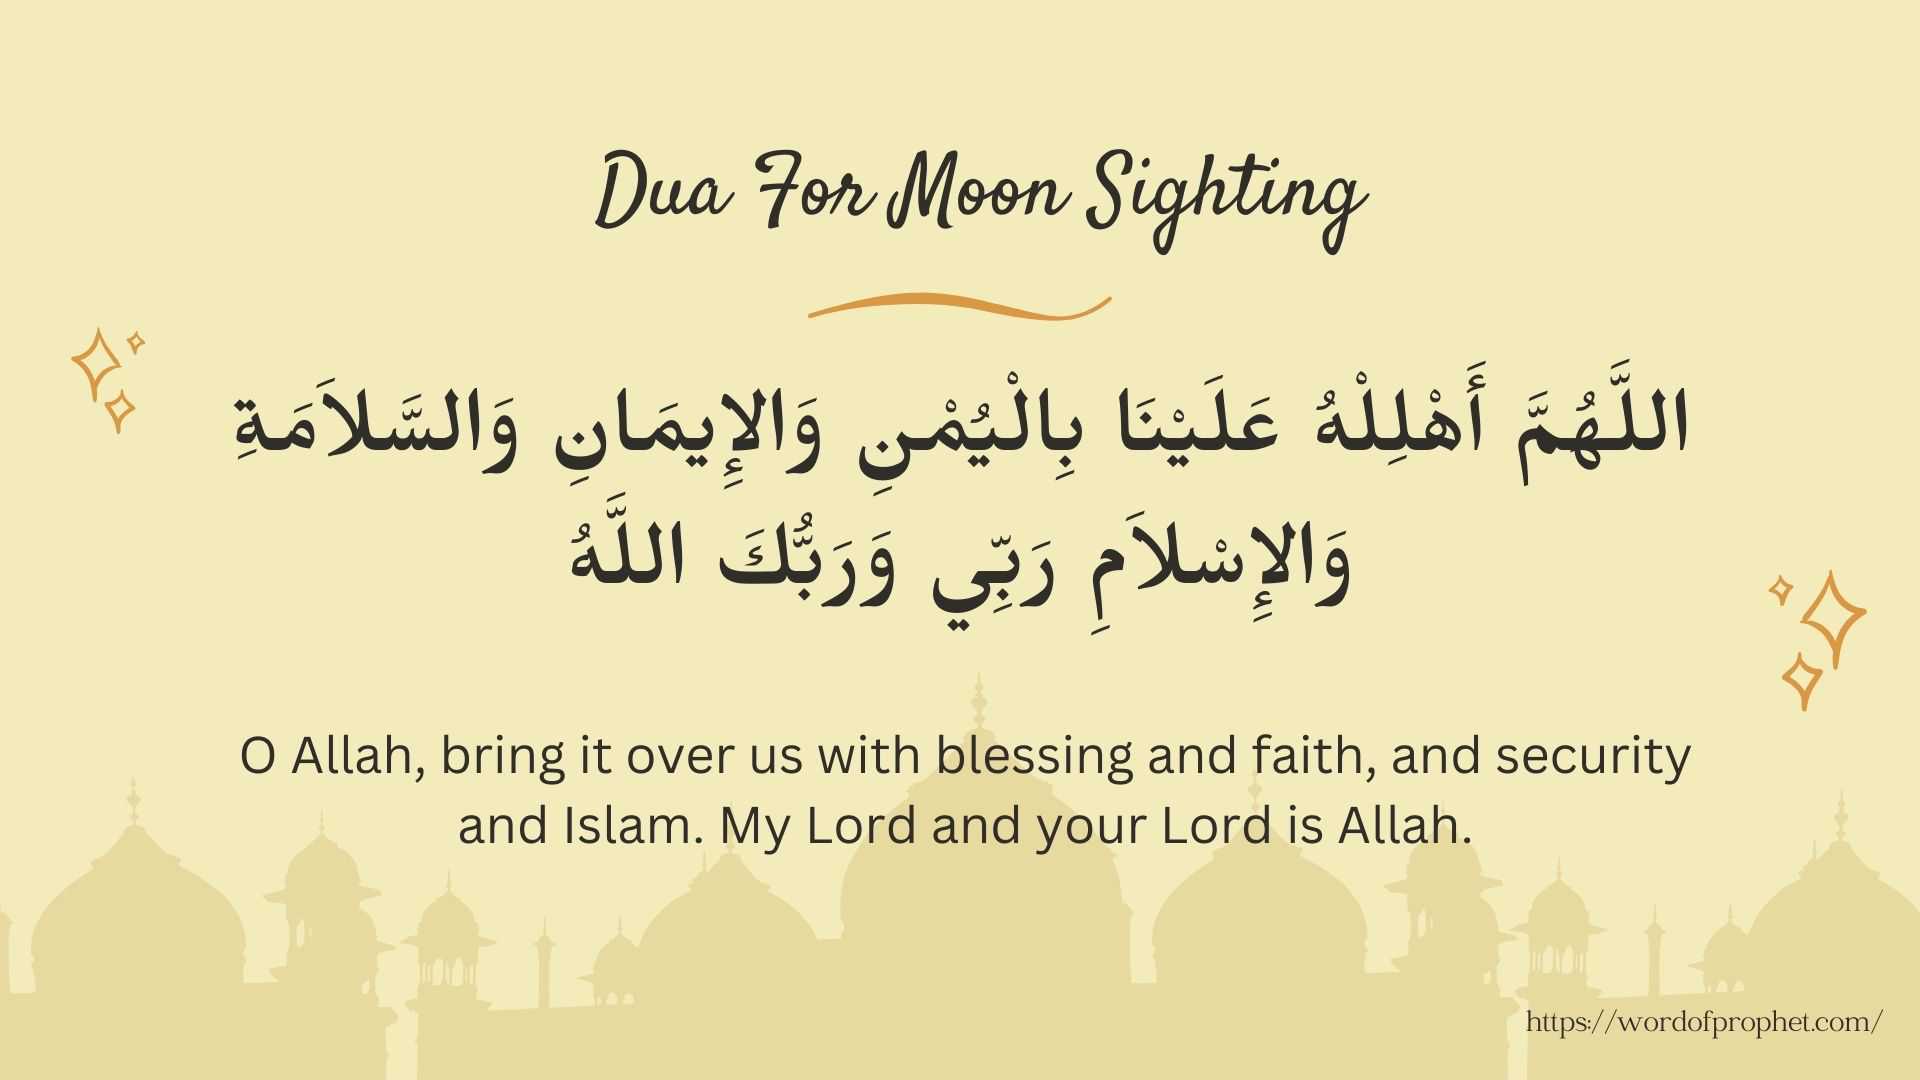 Dua for Moon Sighting of Eid and Ramadan